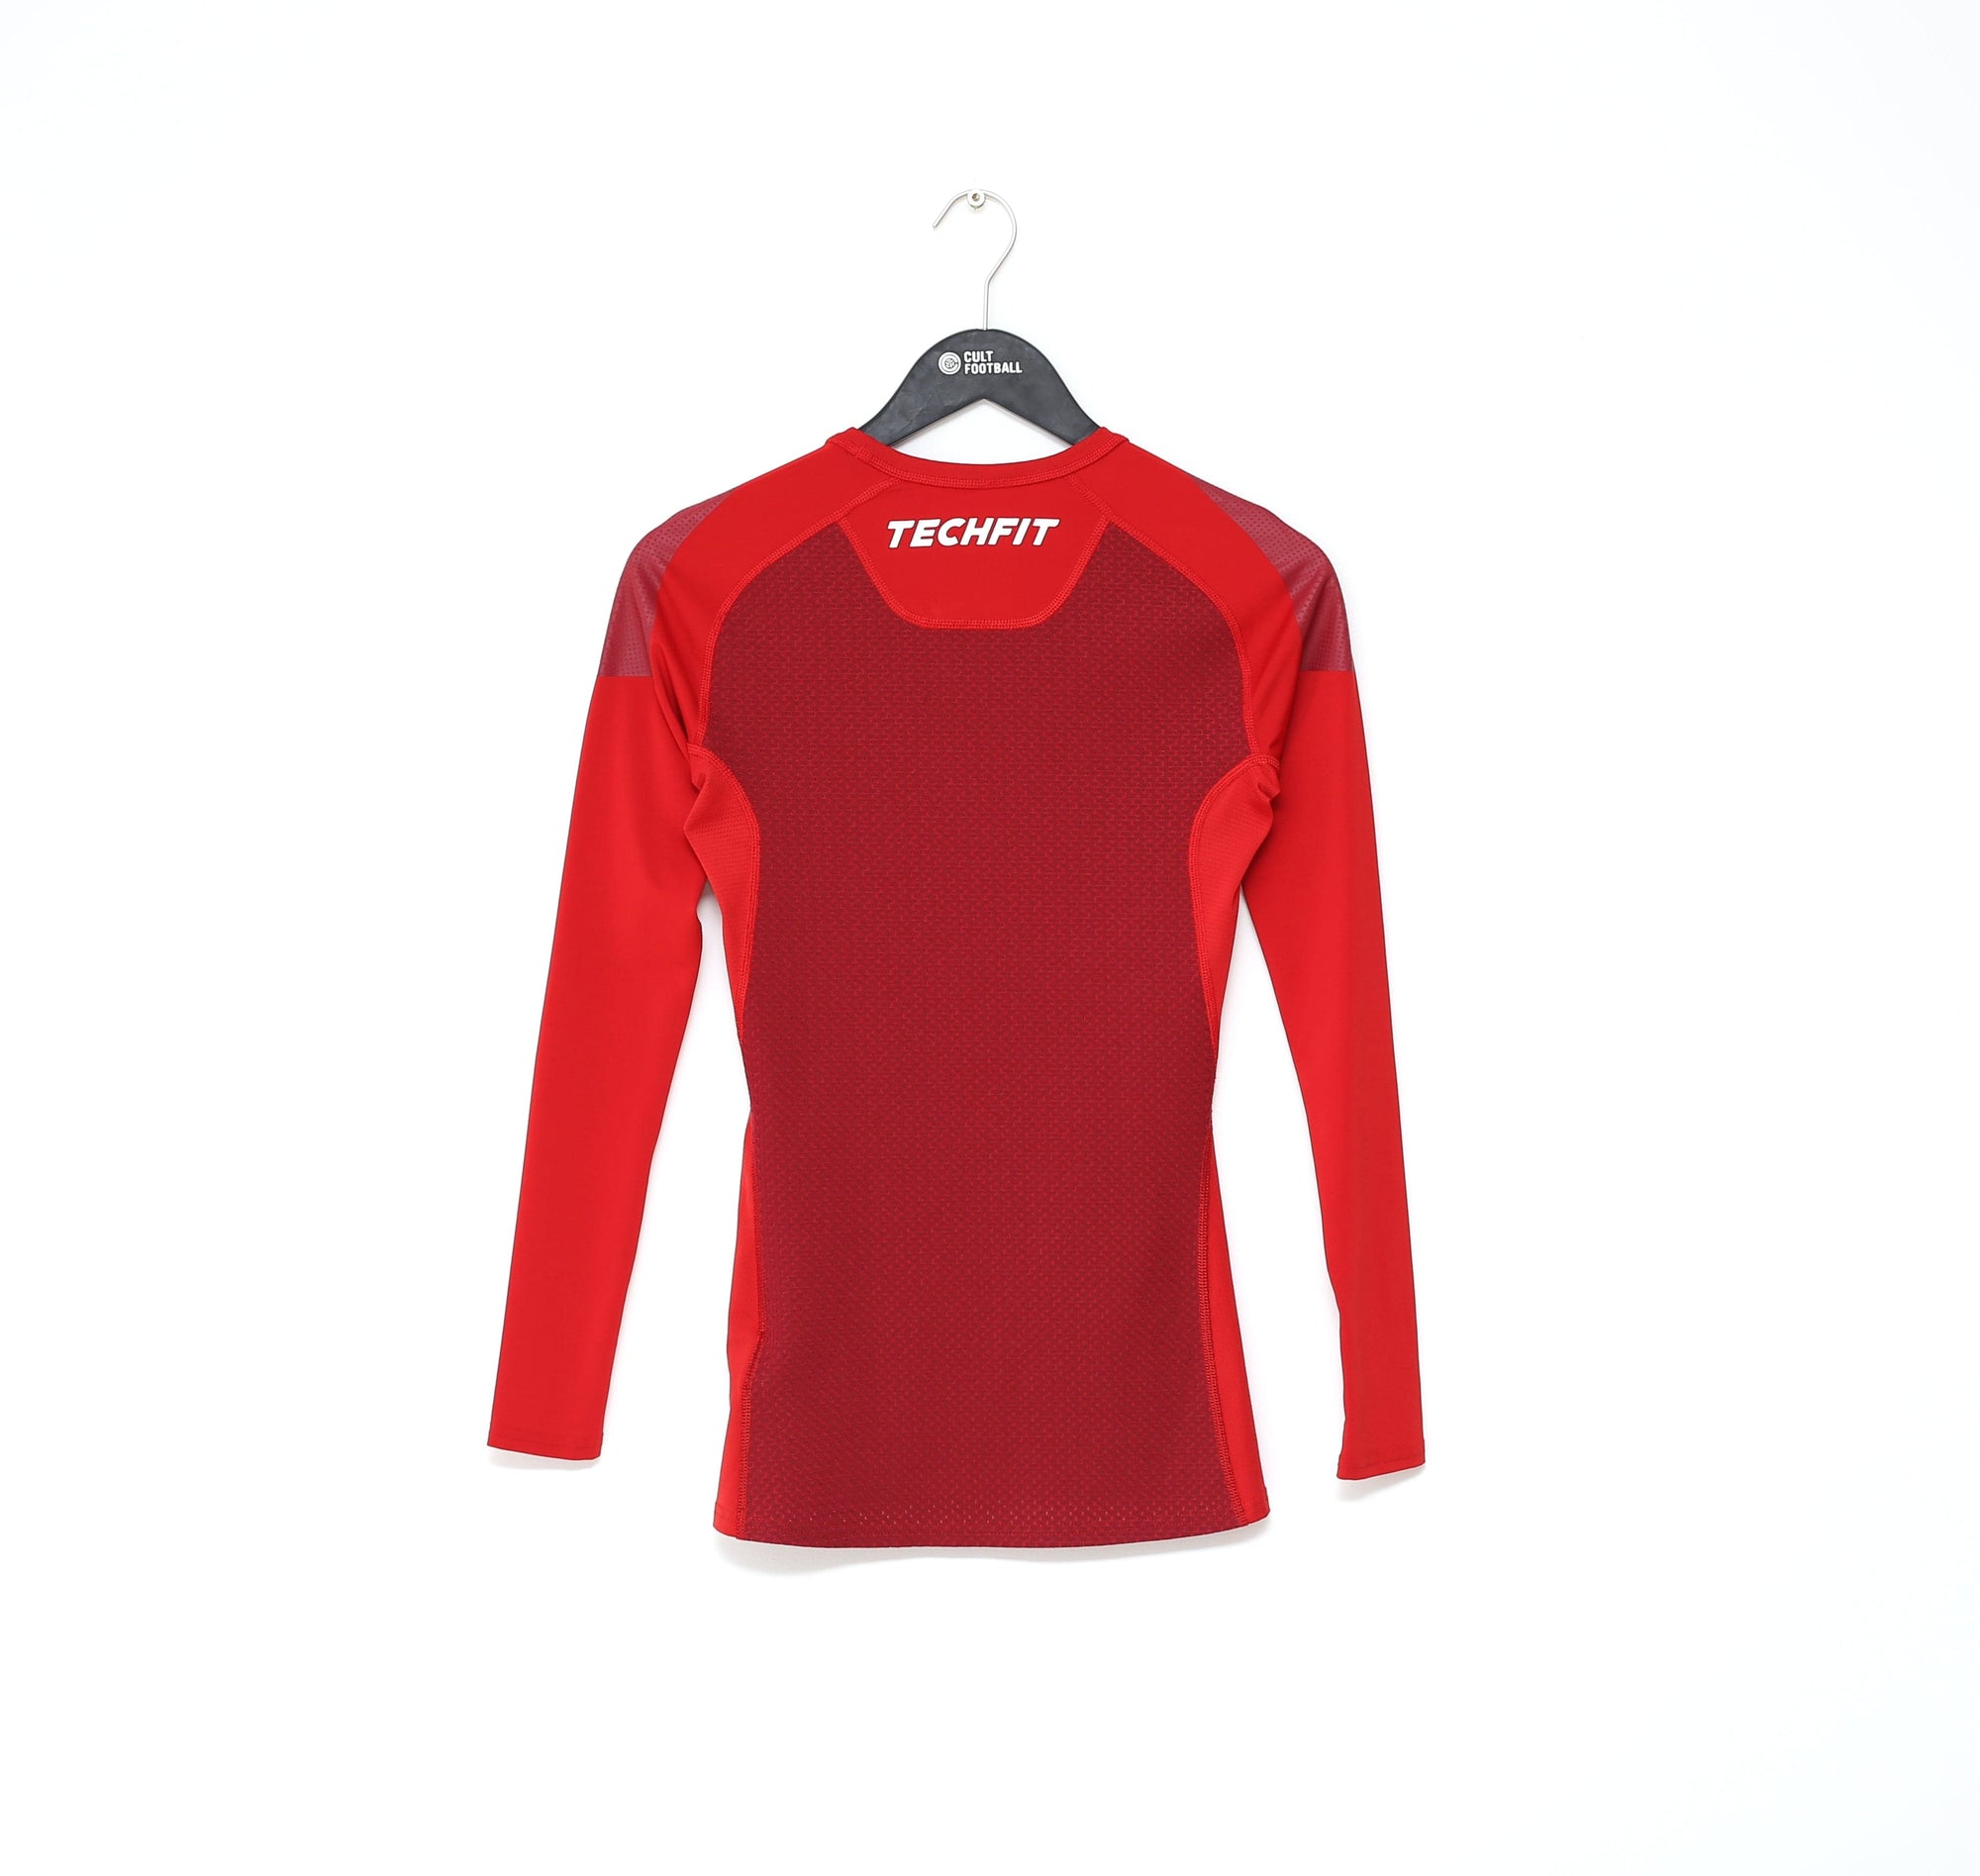 2015/16 BAYERN MUNICH adidas Techfit Compression Base Layer Football S -  Football Shirt Collective